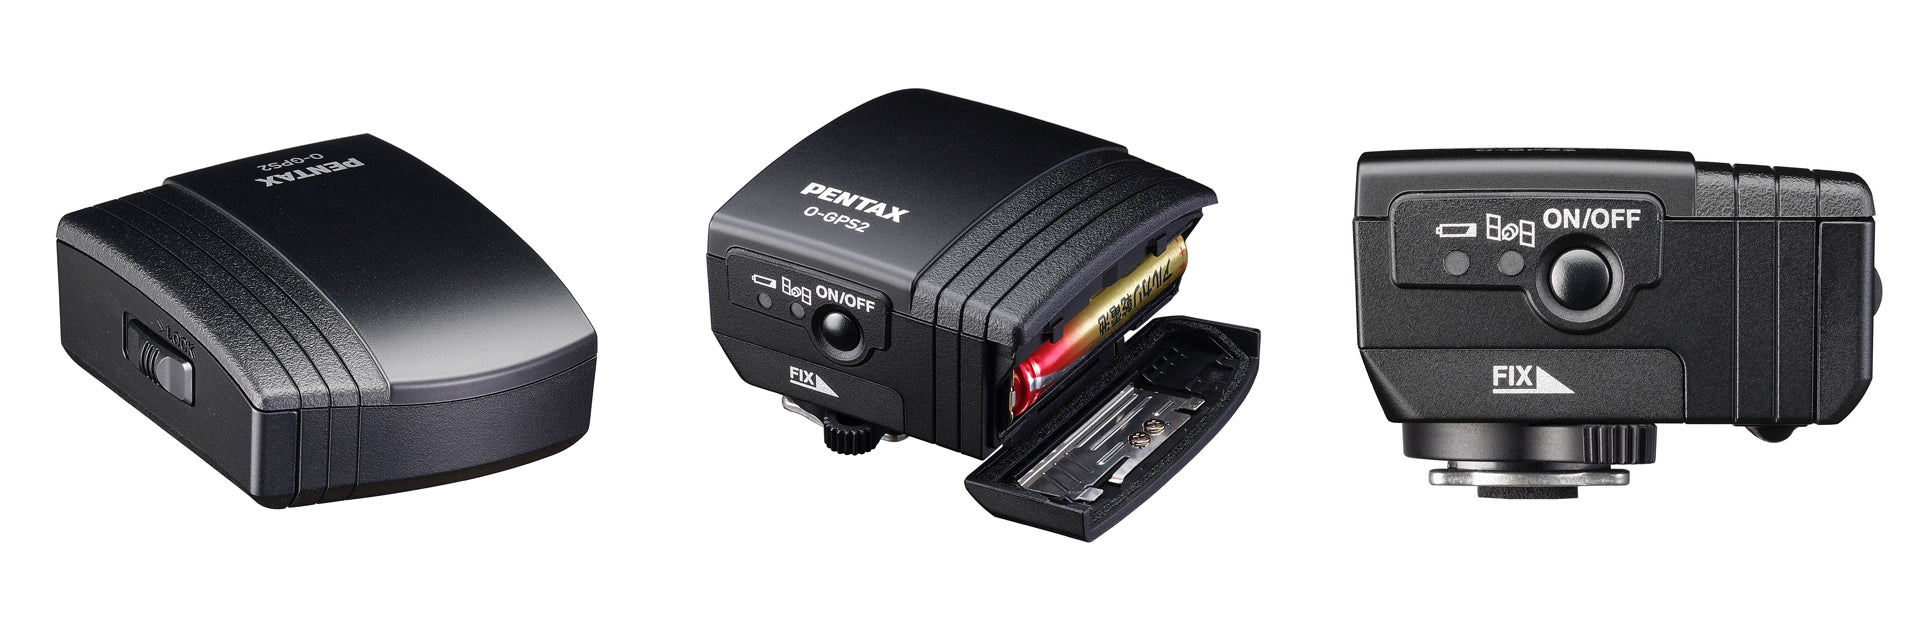 PENTAX O-GPS2 - GPS Unit for PENTAX cameras